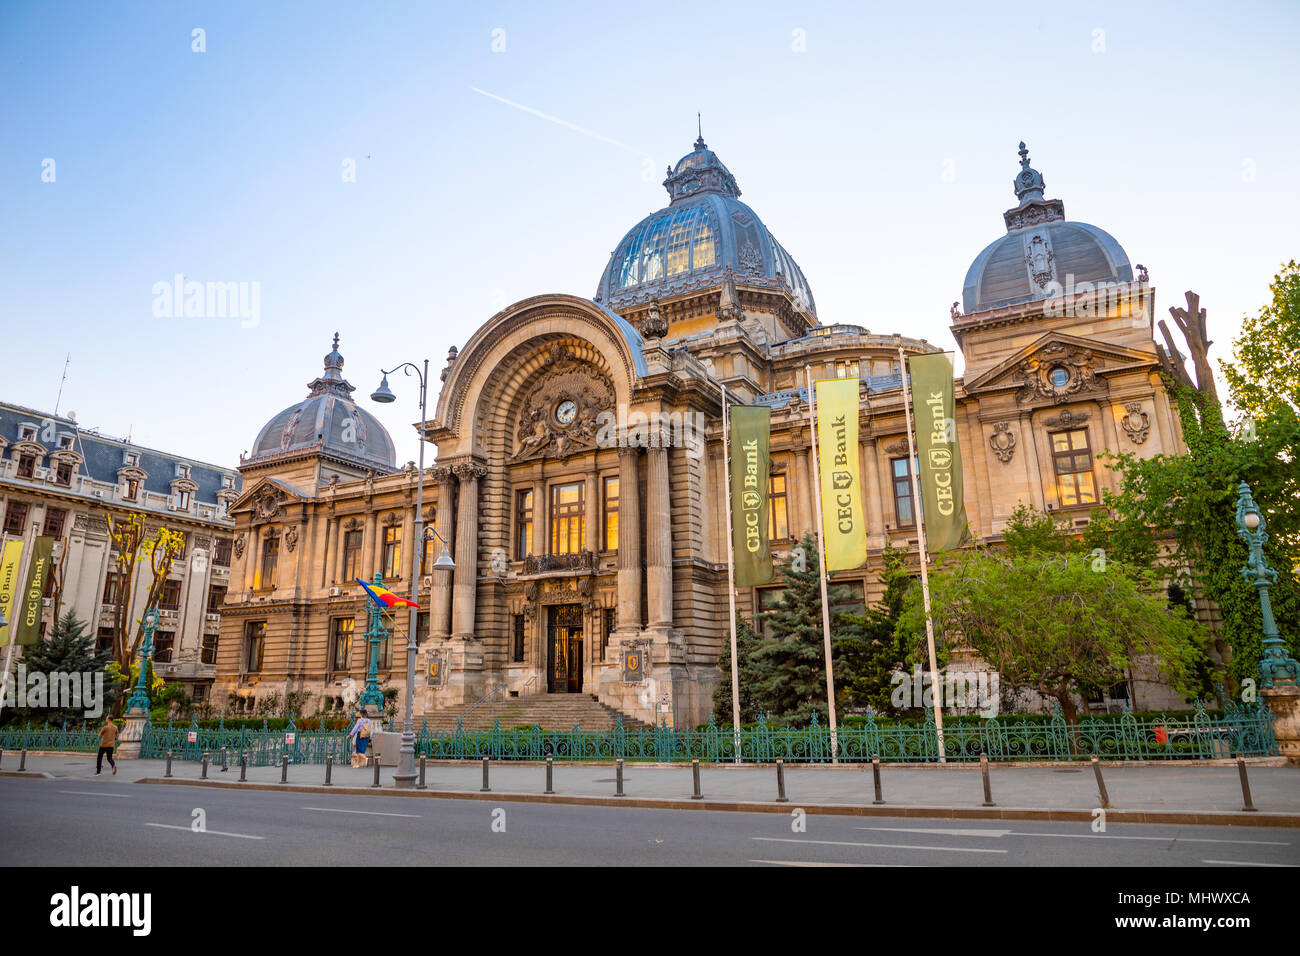 Bucarest, Rumania - 28.04.2018: Palacio de Depósitos y Consignaciones en Bucarest. Foto de stock